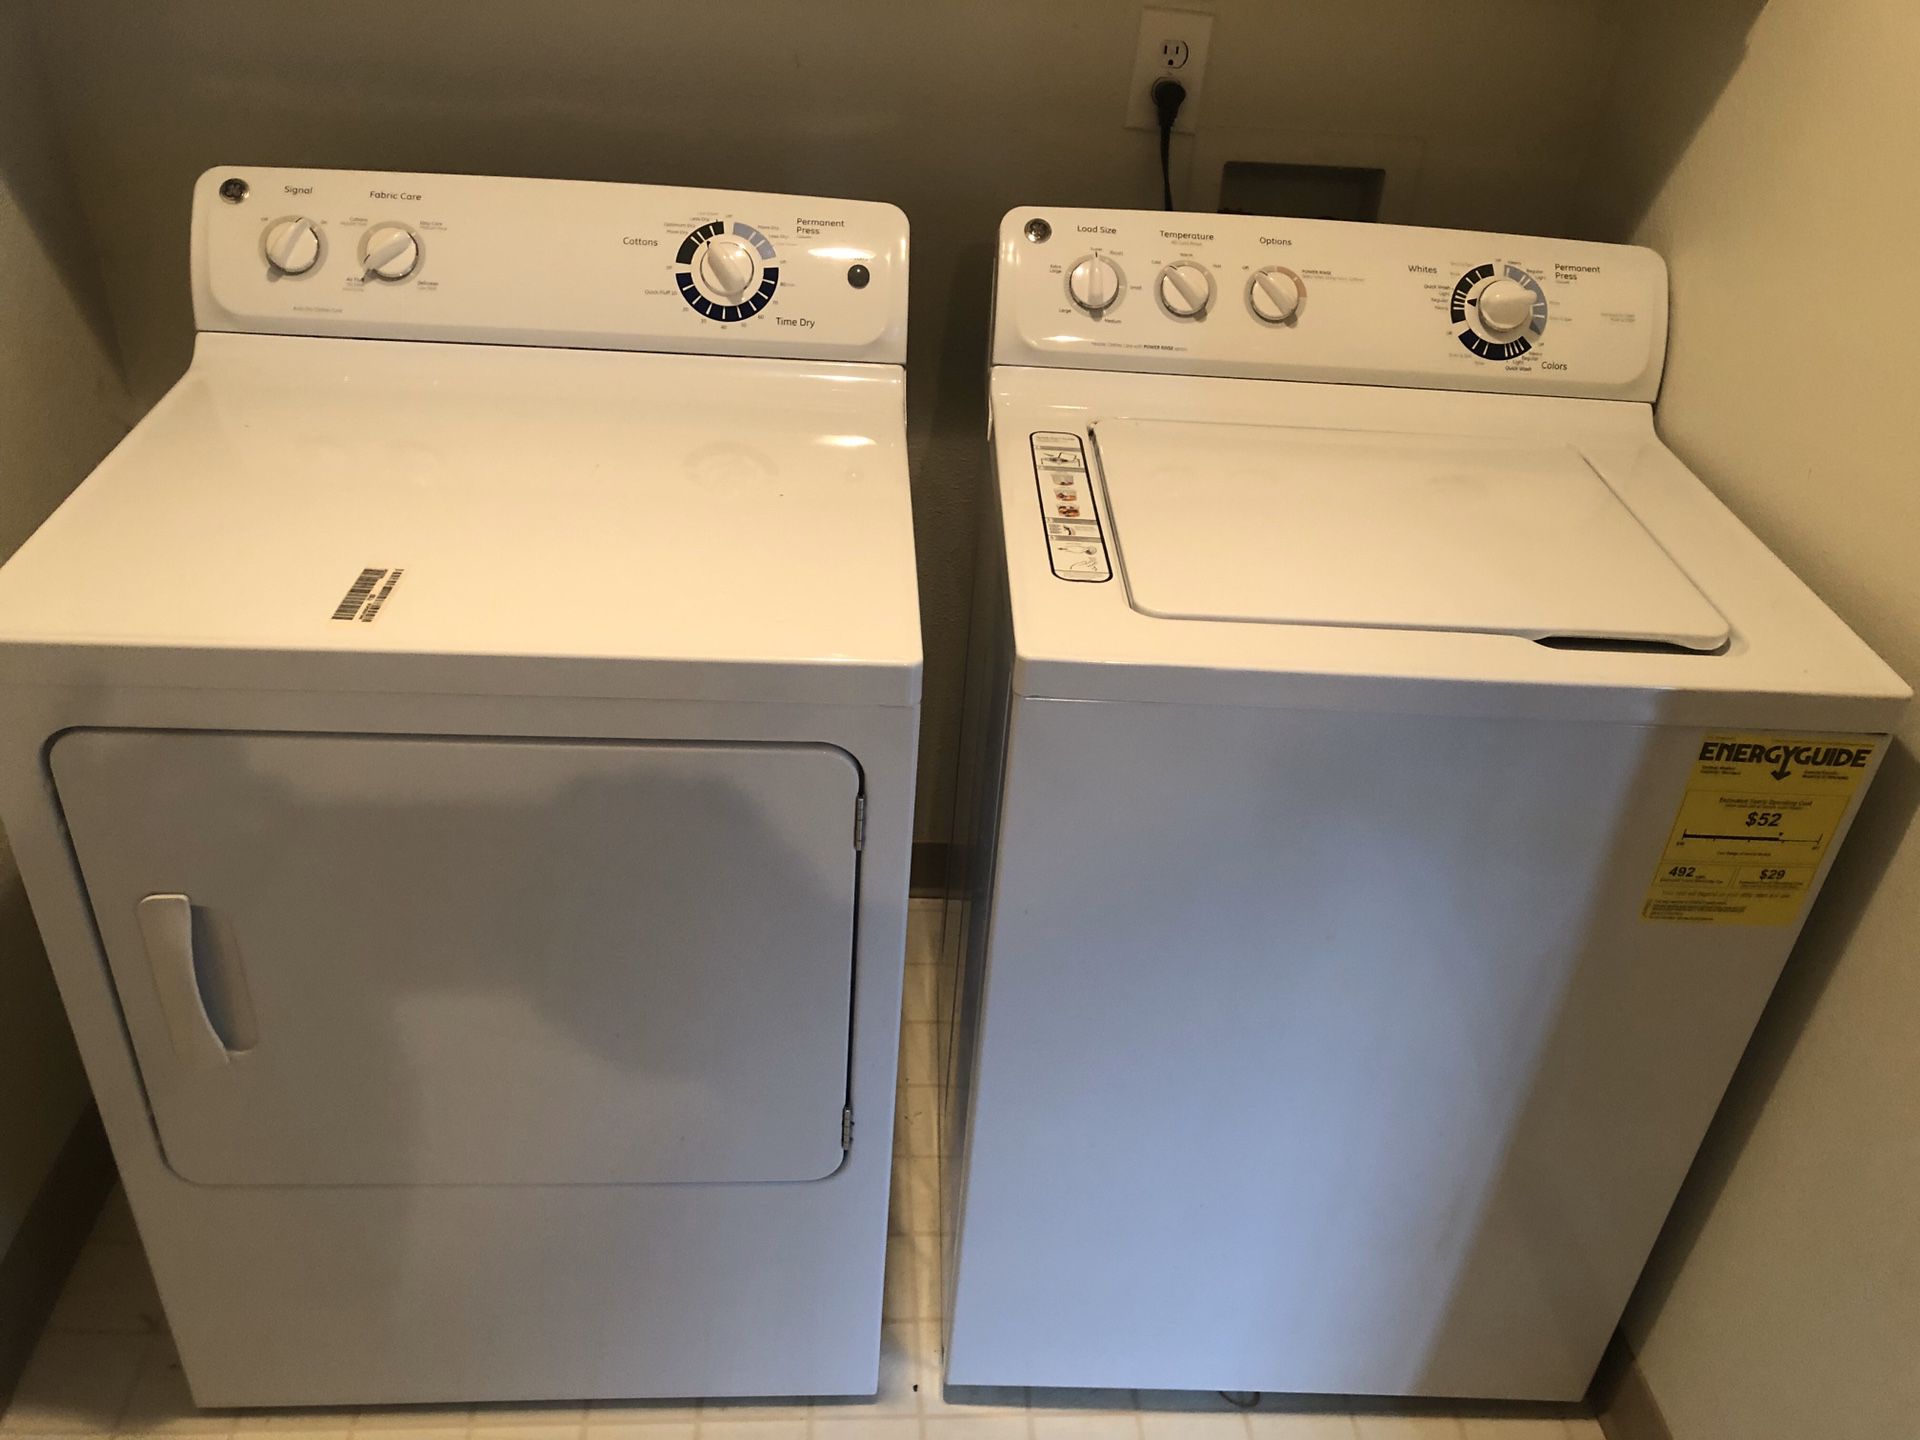 GE Washer & Dryer set